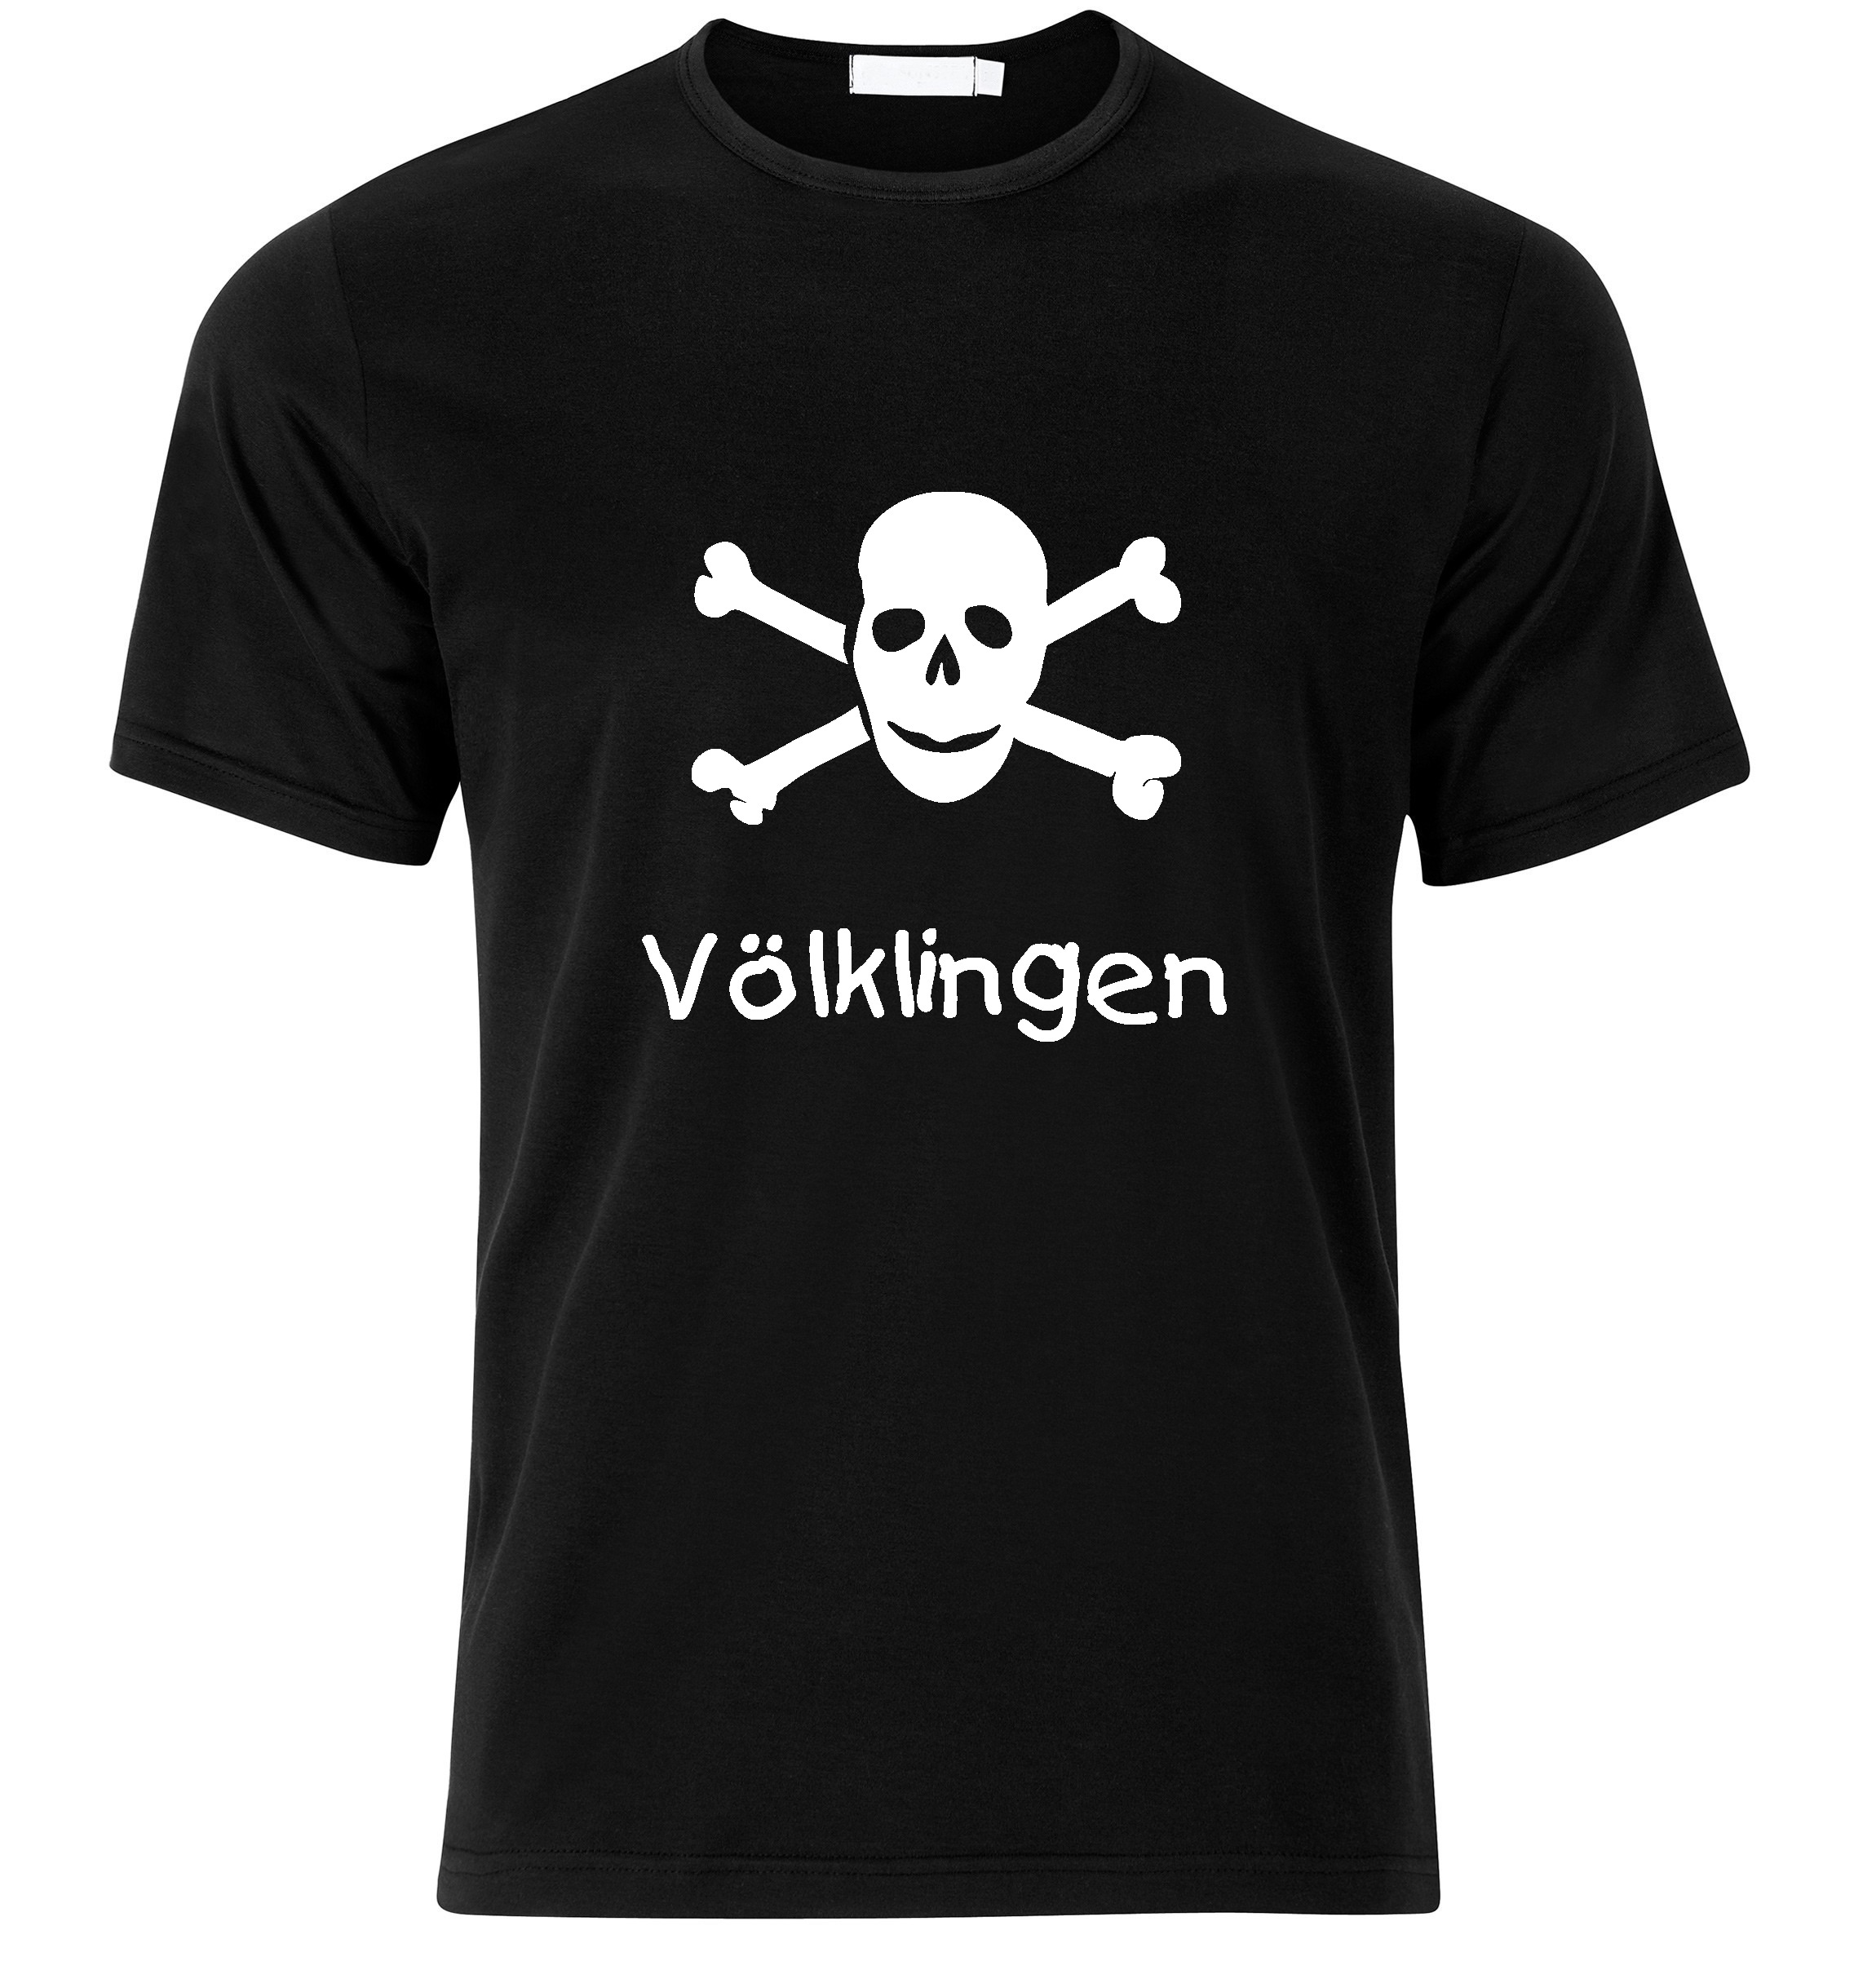 T-Shirt Völklingen Jolly Roger, Totenkopf